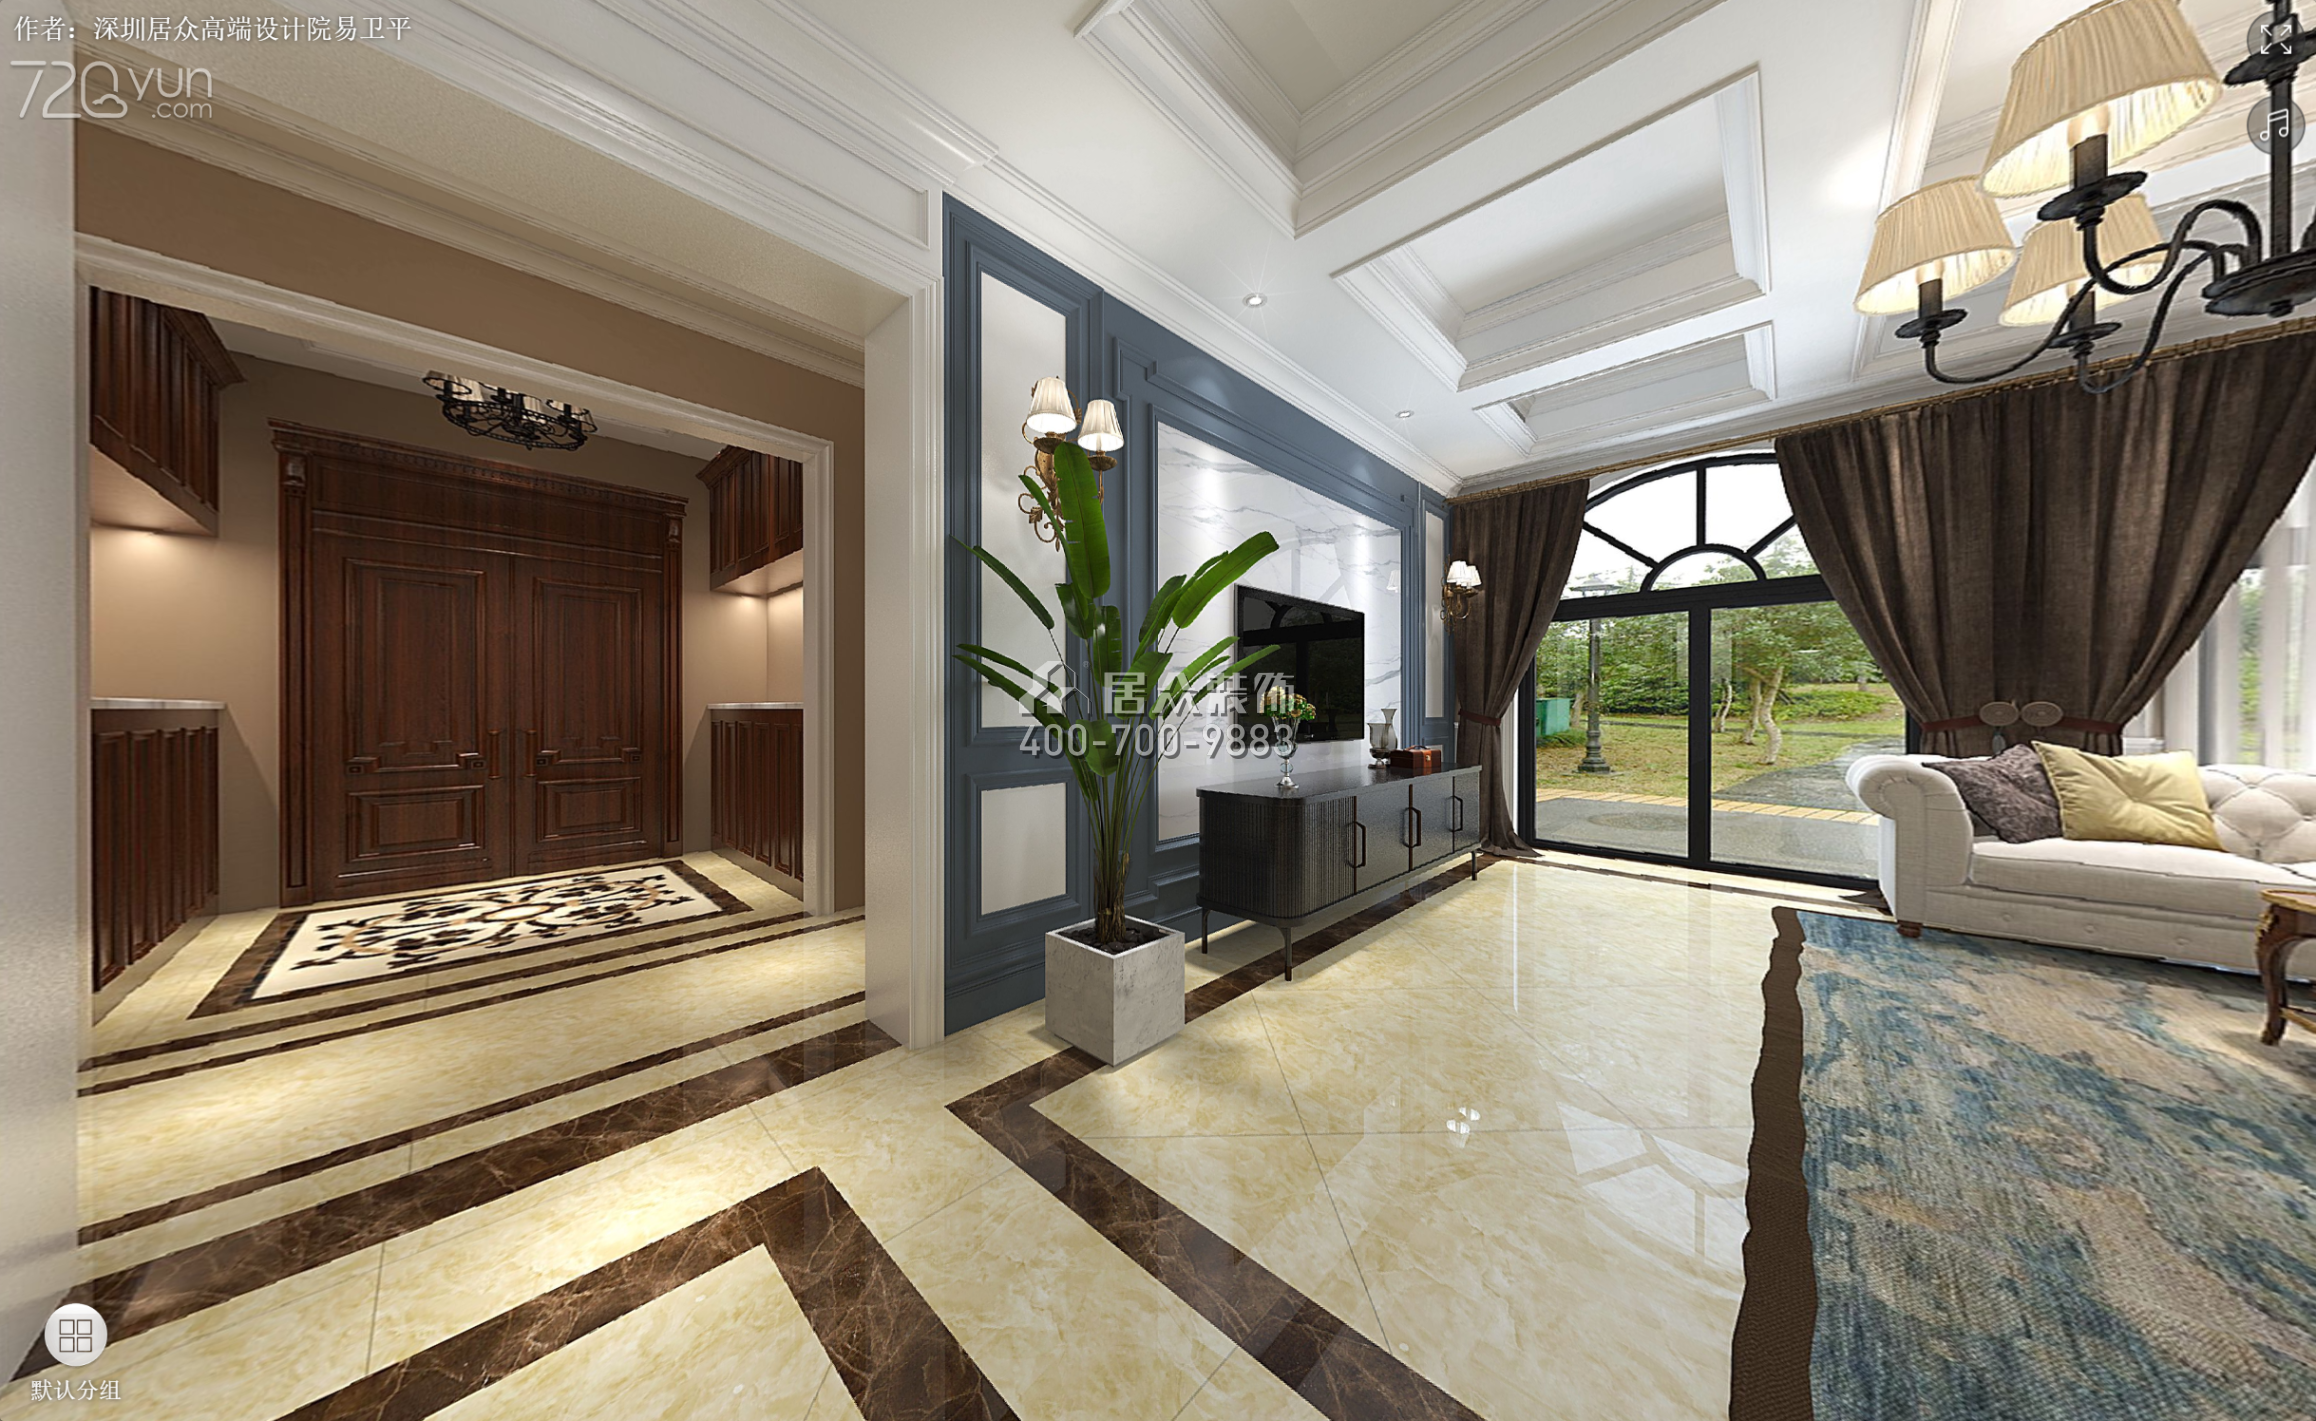 庆隆南山高尔夫国际社区350平方米美式风格别墅户型客厅装修效果图